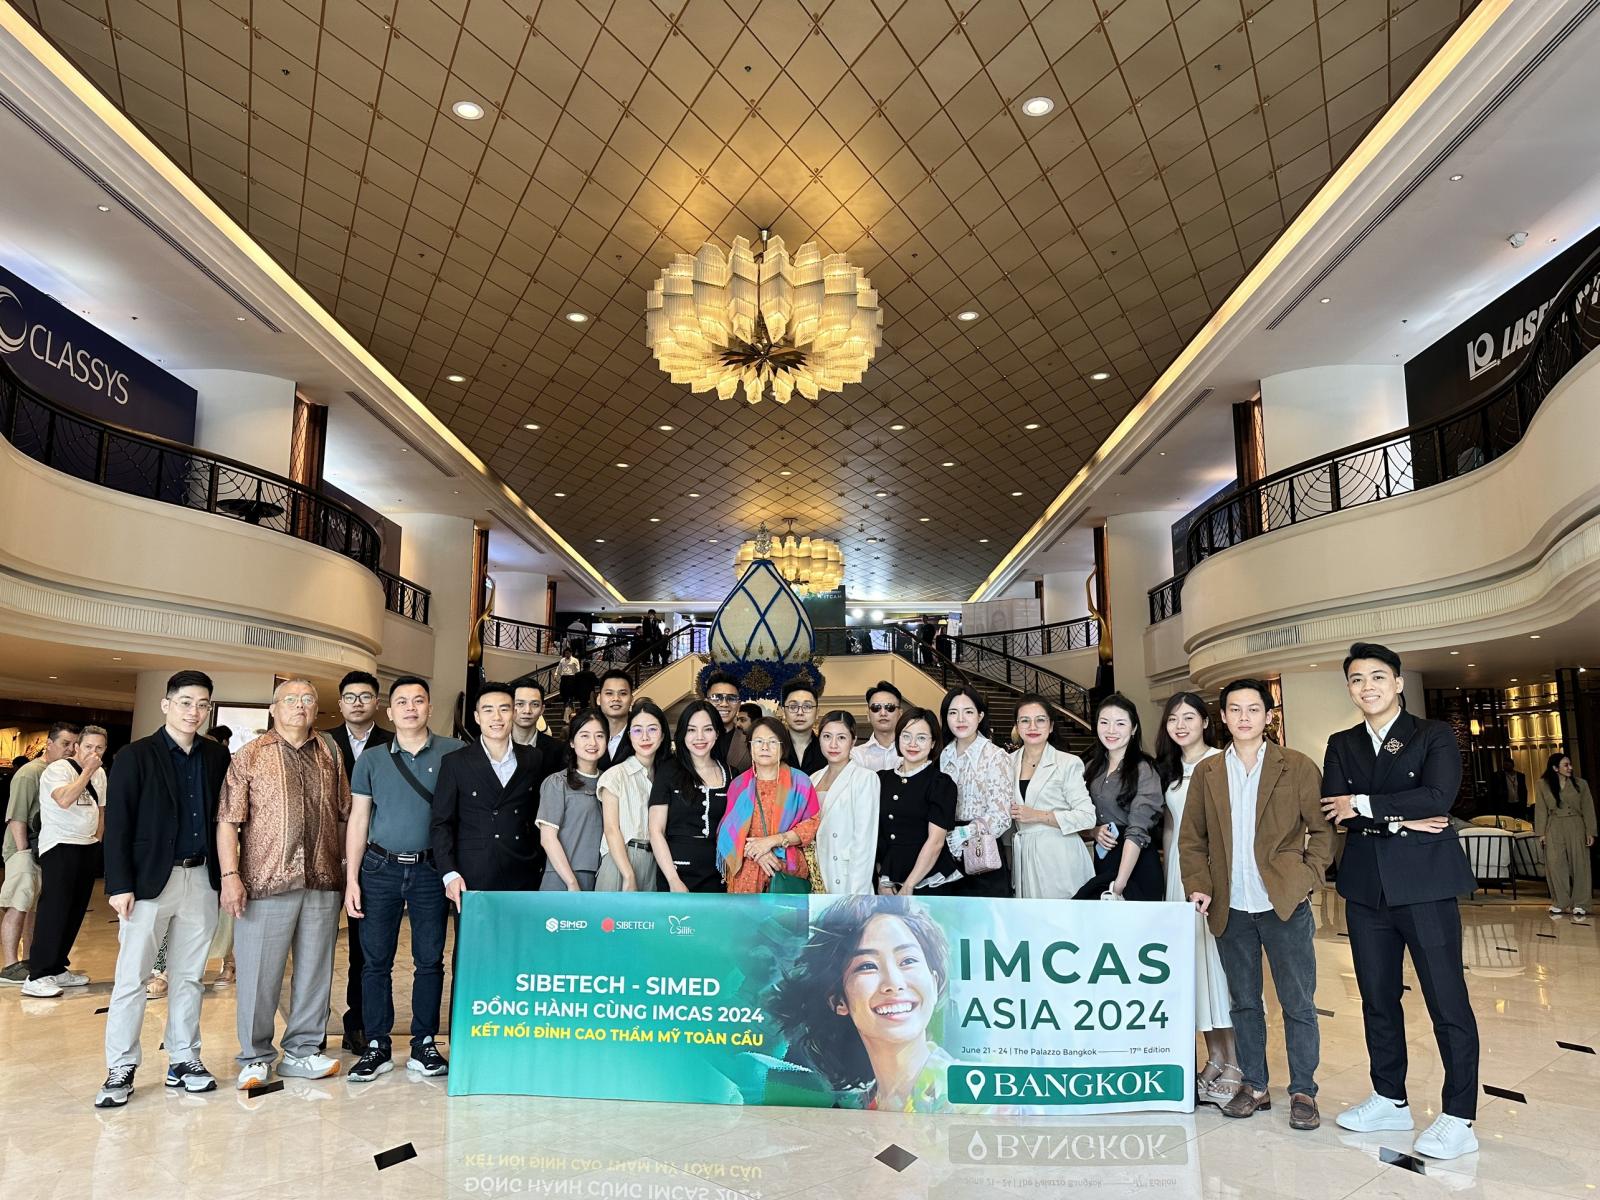 Hành trình của Sibetech tại IMCAS Asia 2024